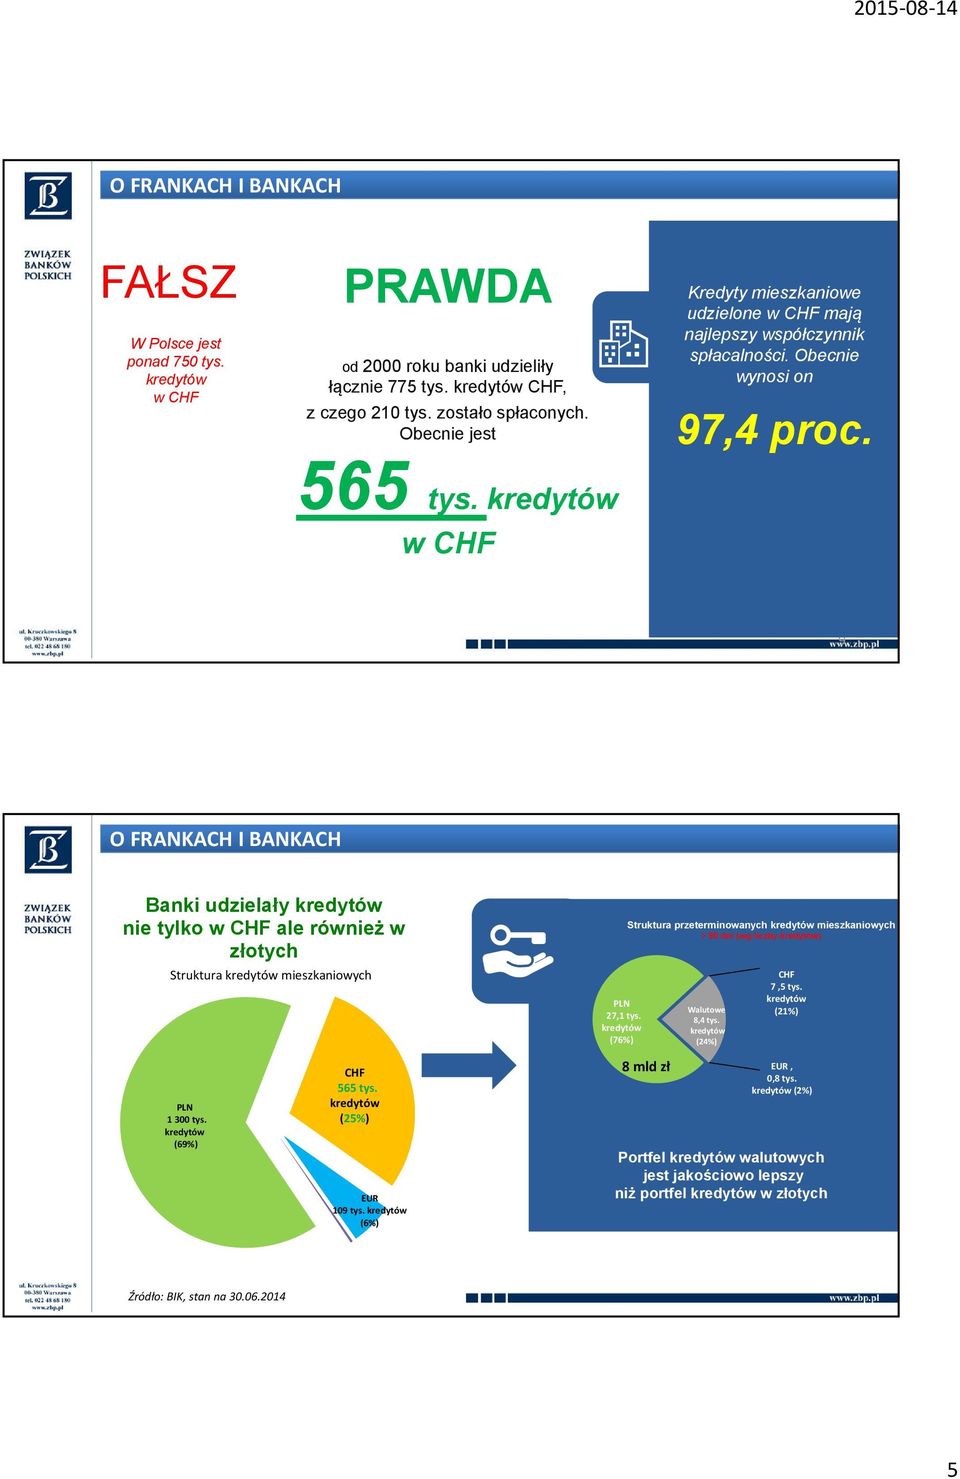 9 Banki udzielały nie tylko w CHF ale również w złotych Struktura mieszkaniowych PLN 1 300 tys. (69%) CHF 565 tys. (25%) EUR 109 tys. (6%) PLN 27,1 tys.